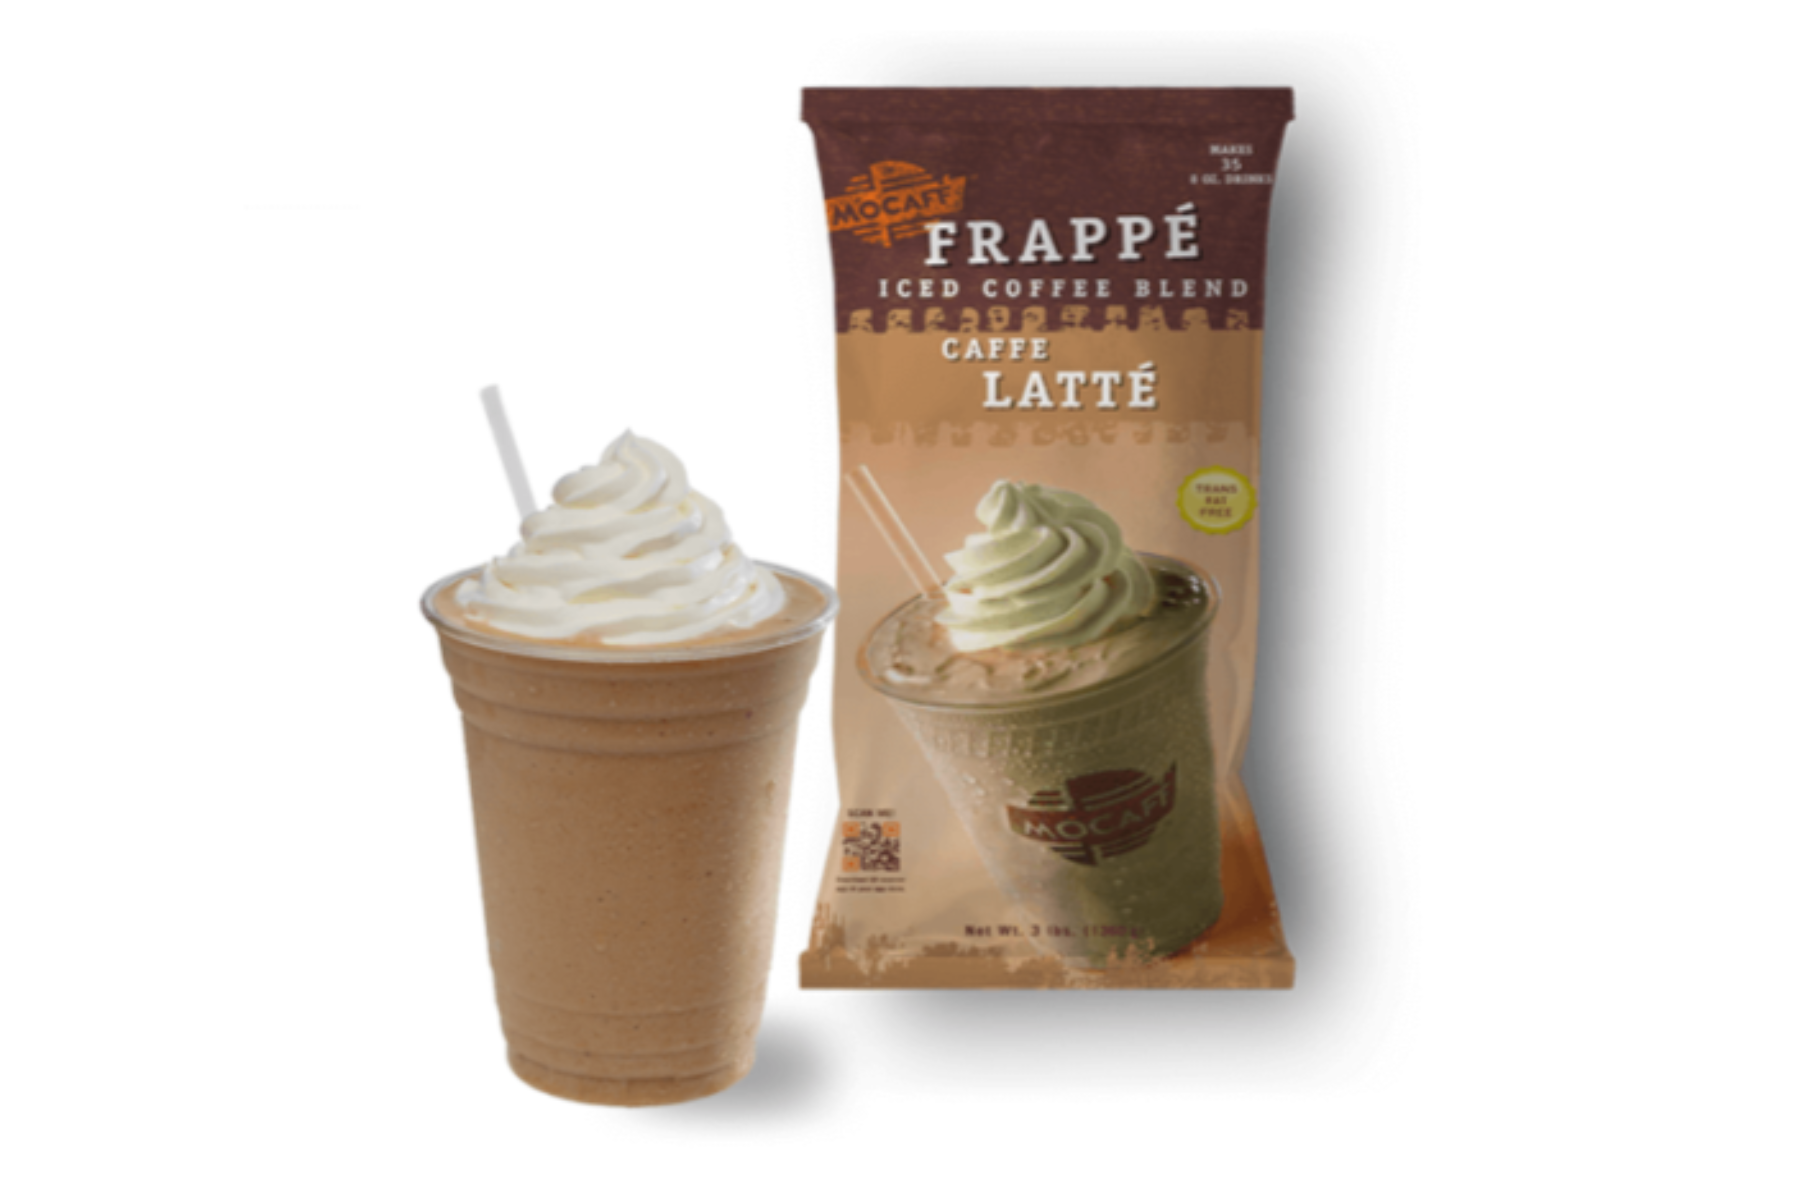 MoCafe - Blended Ice Frappes - 25 lb. Box: Caffe Latte